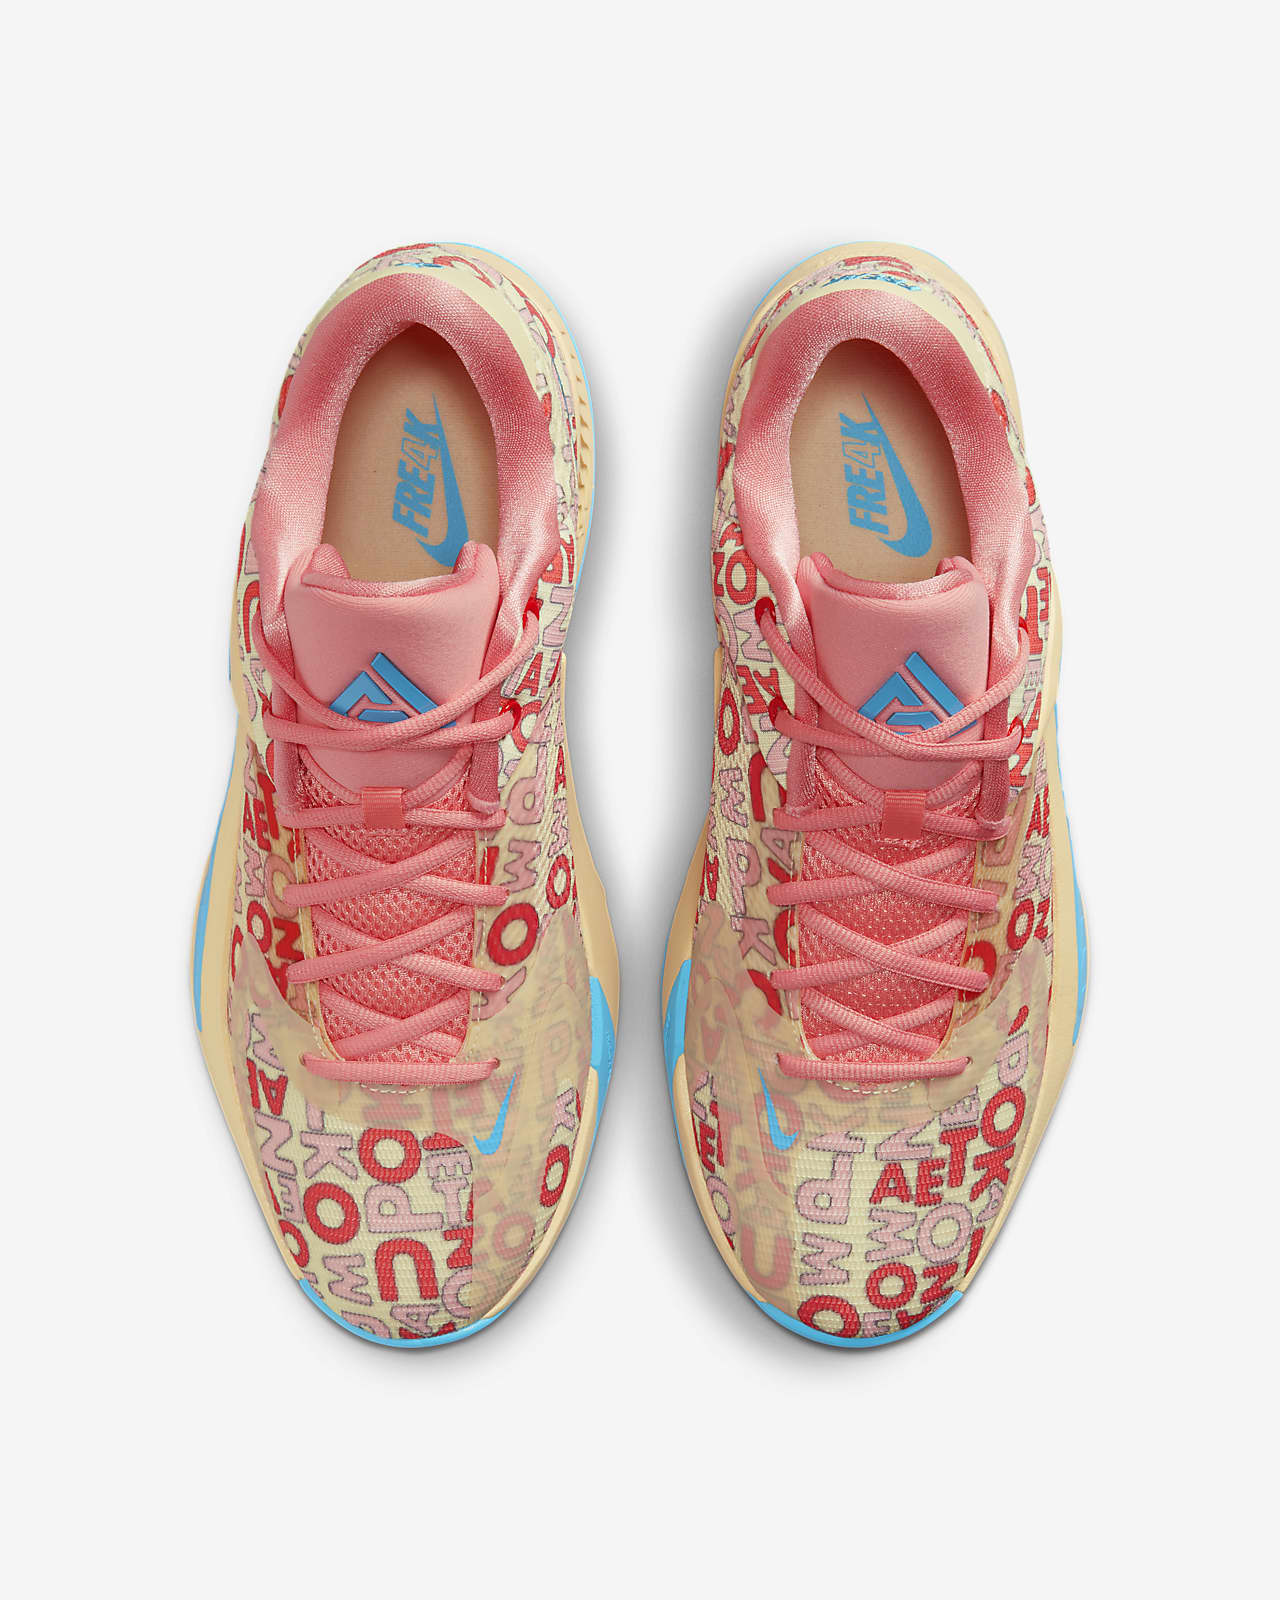 Nike Zoom Freak 4 : r/BBallShoes